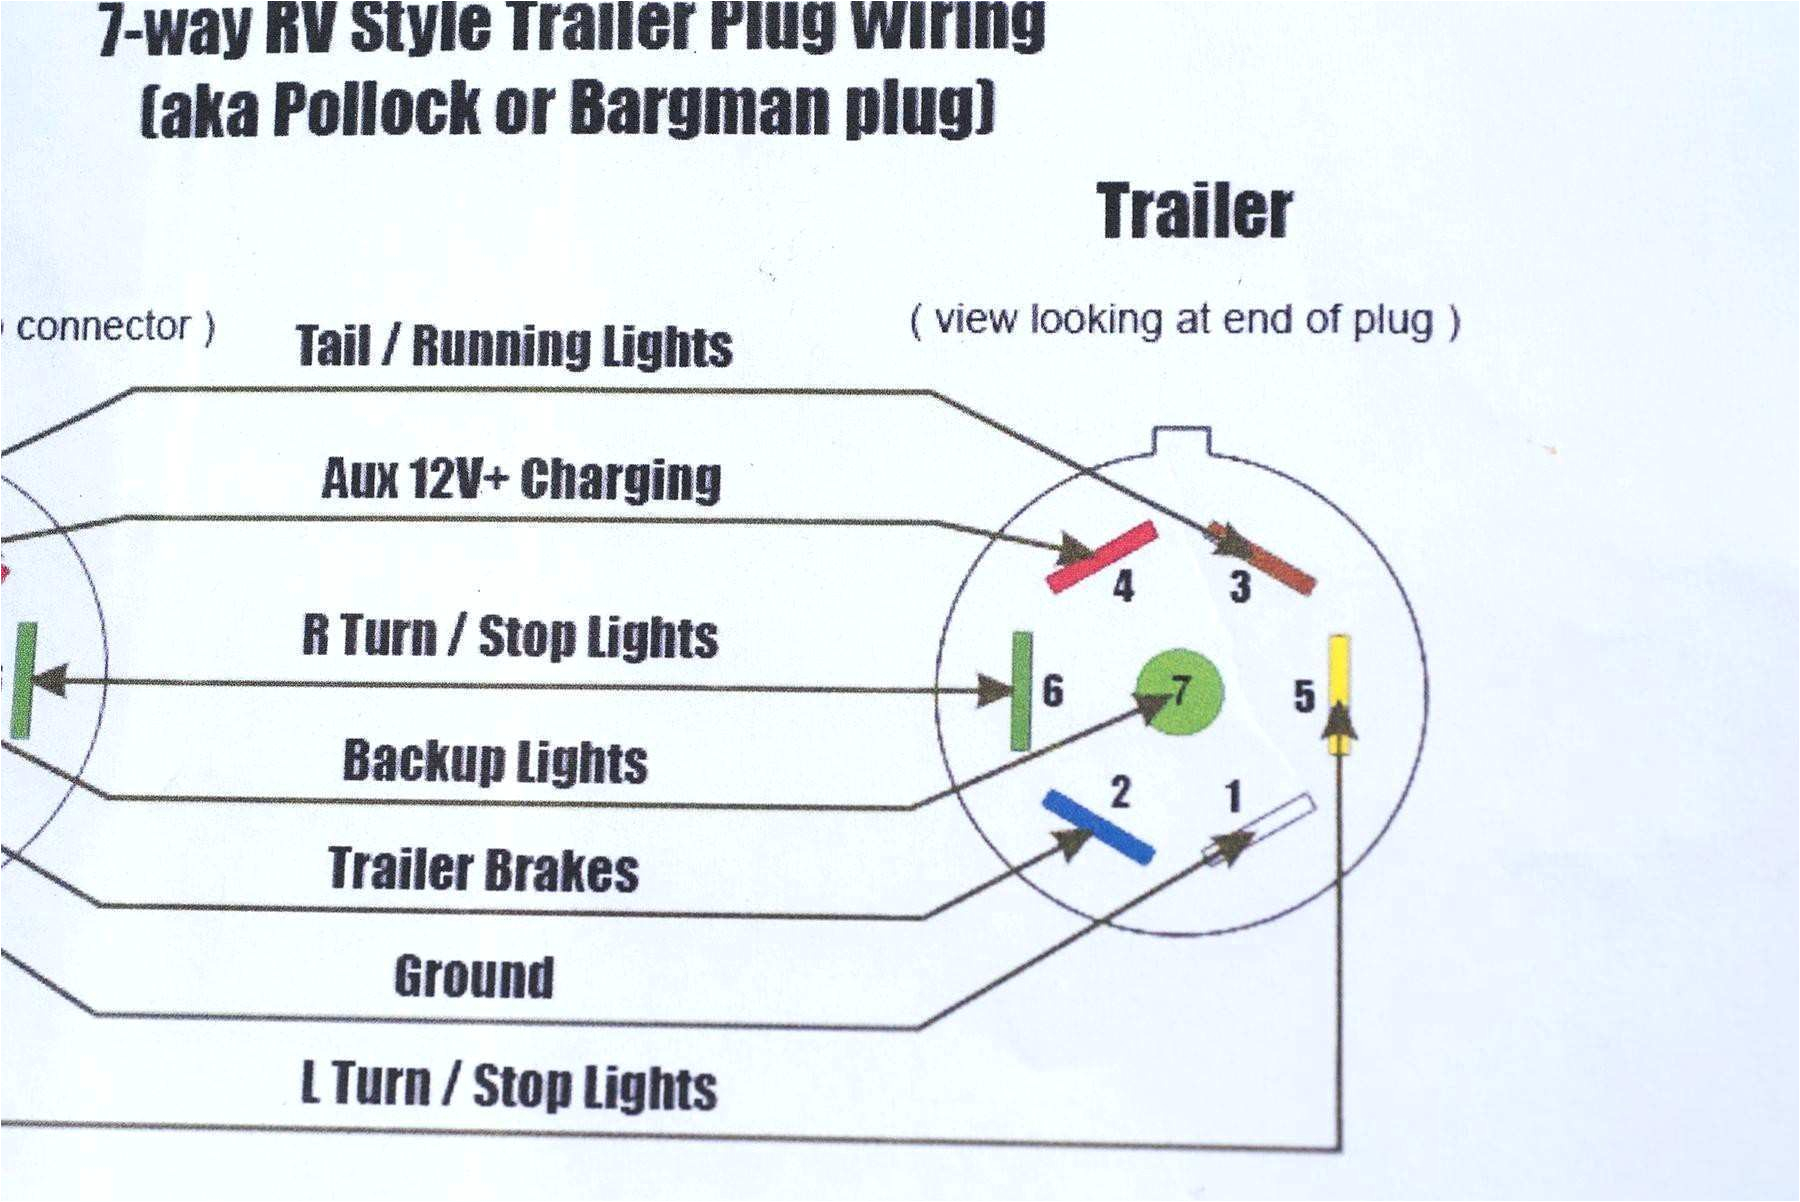 trailer wiring diagram 13 way wiring diagram fascinating 7 way trailer plug wiring diagram contrail trailer